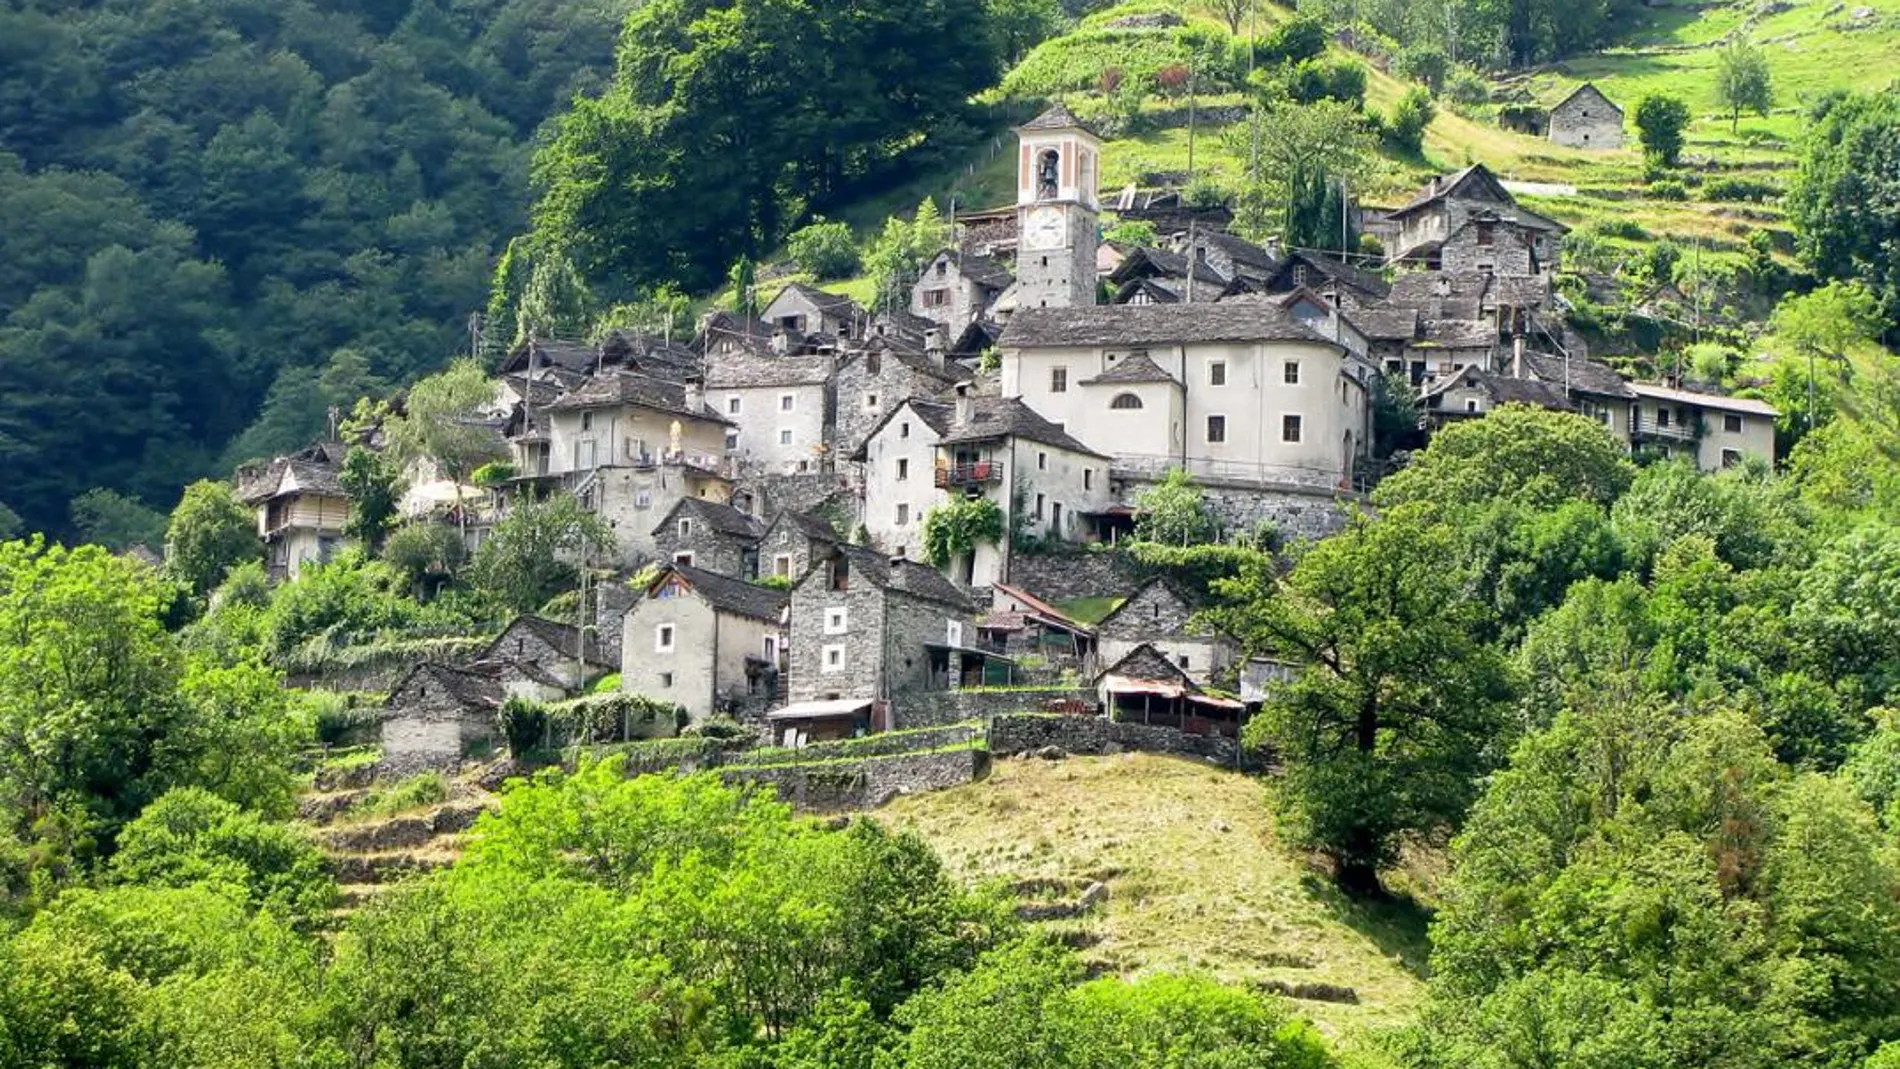 Corippo está situado en el Valle de Verzasca, en la región italiana del Tesino